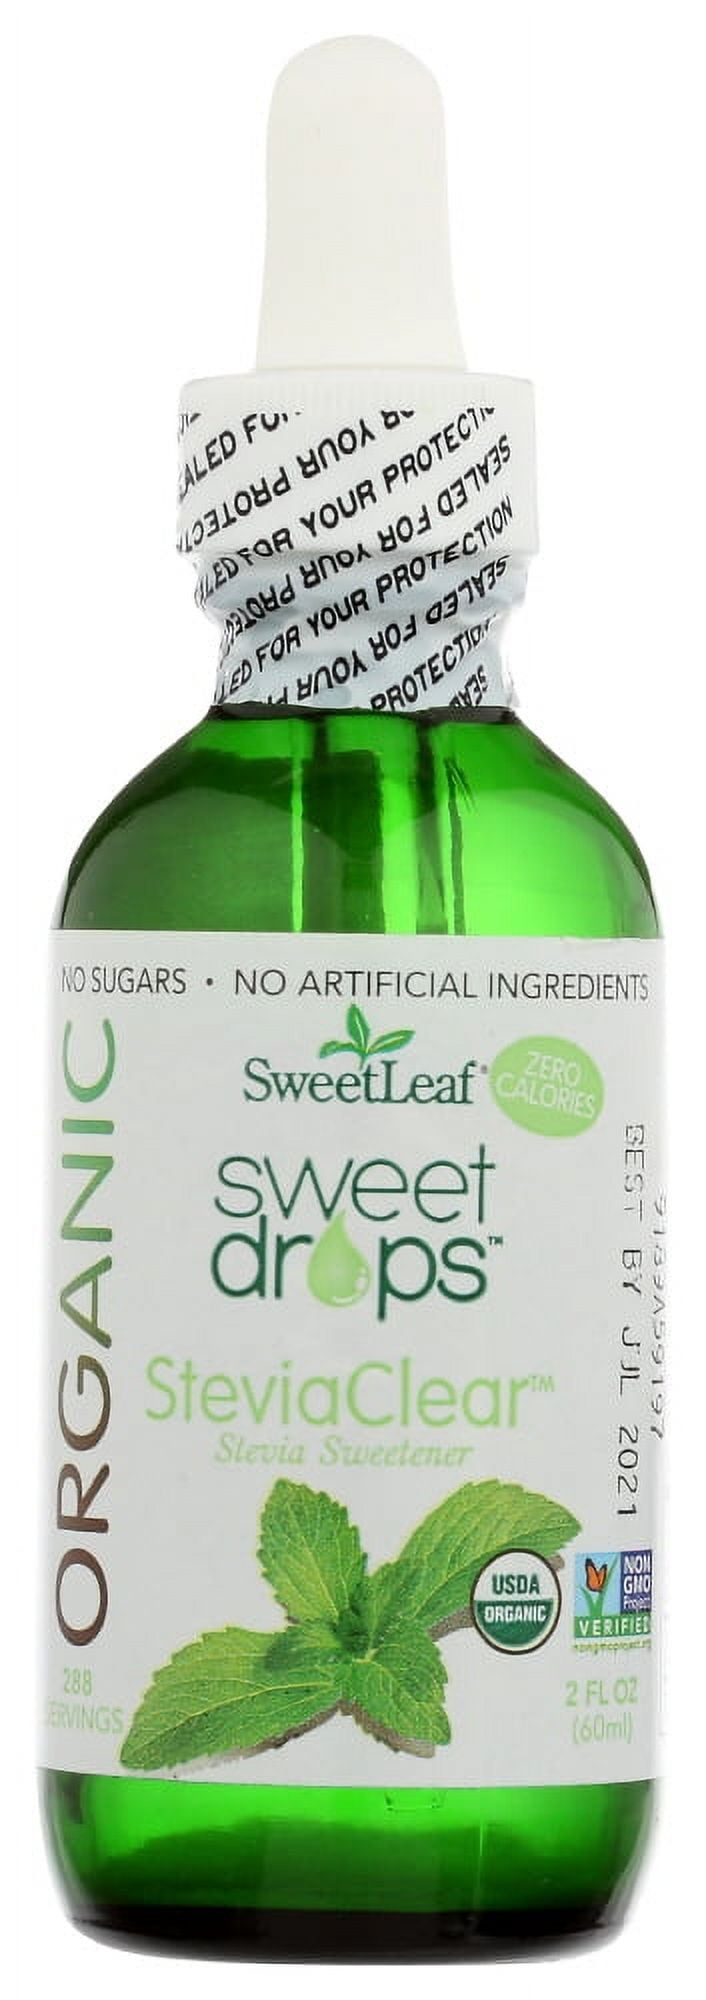 SweetLeaf Organic Liquid Stevia, Stevia Clear 2 fl. oz